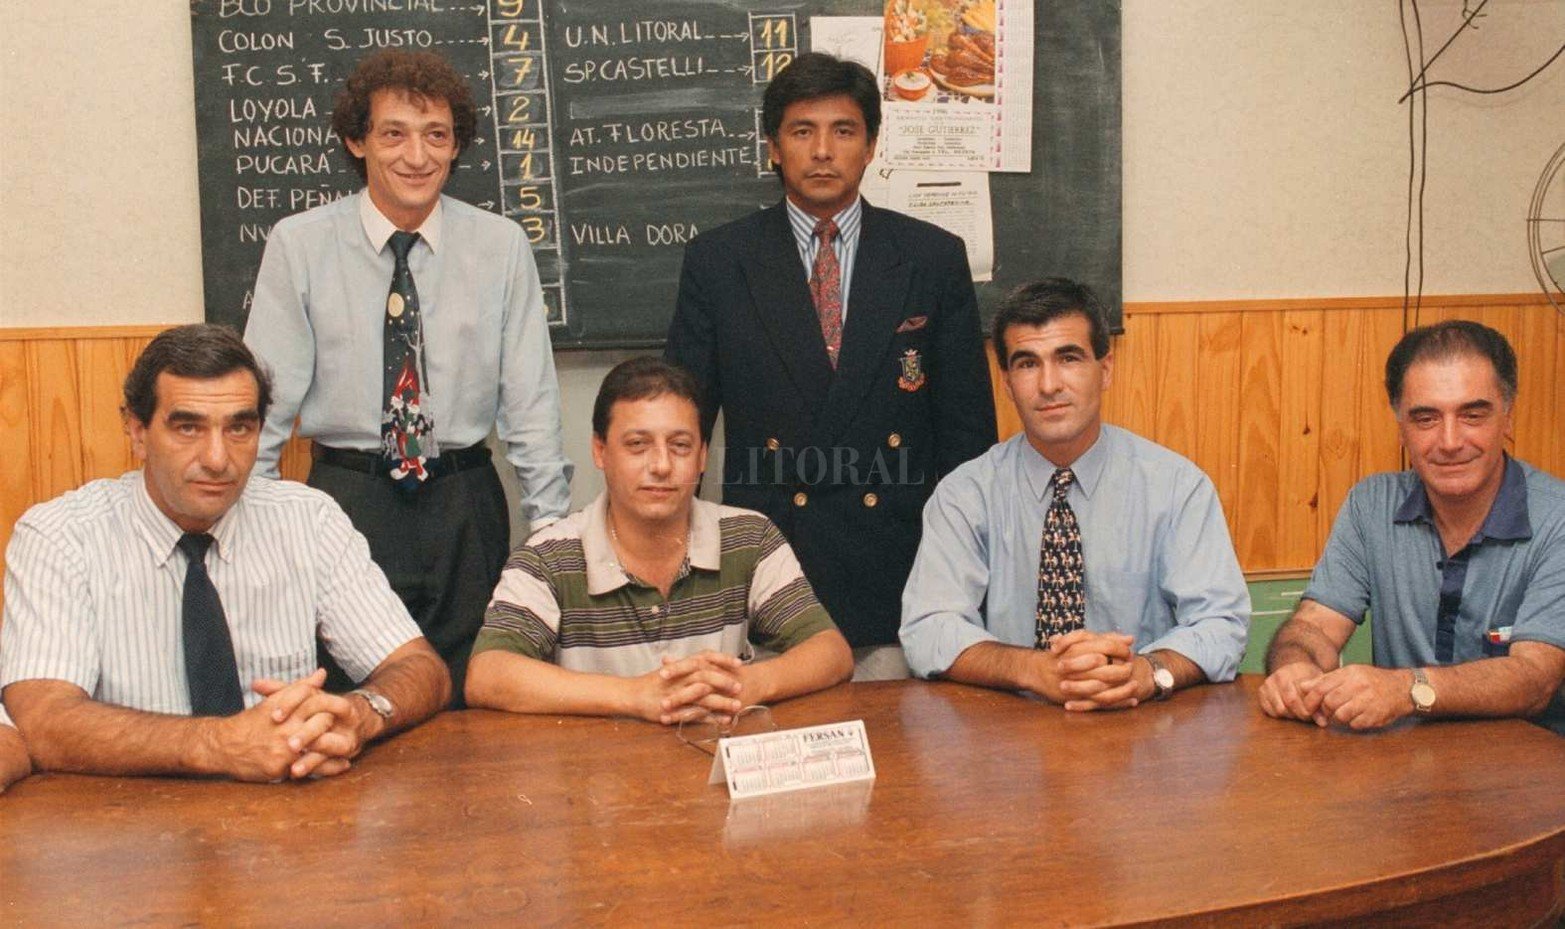 La Liga Santafesina de Fútbol cumplió 90 años de rica historia. Reunión de árbitros en la sede de calle Corrientes.